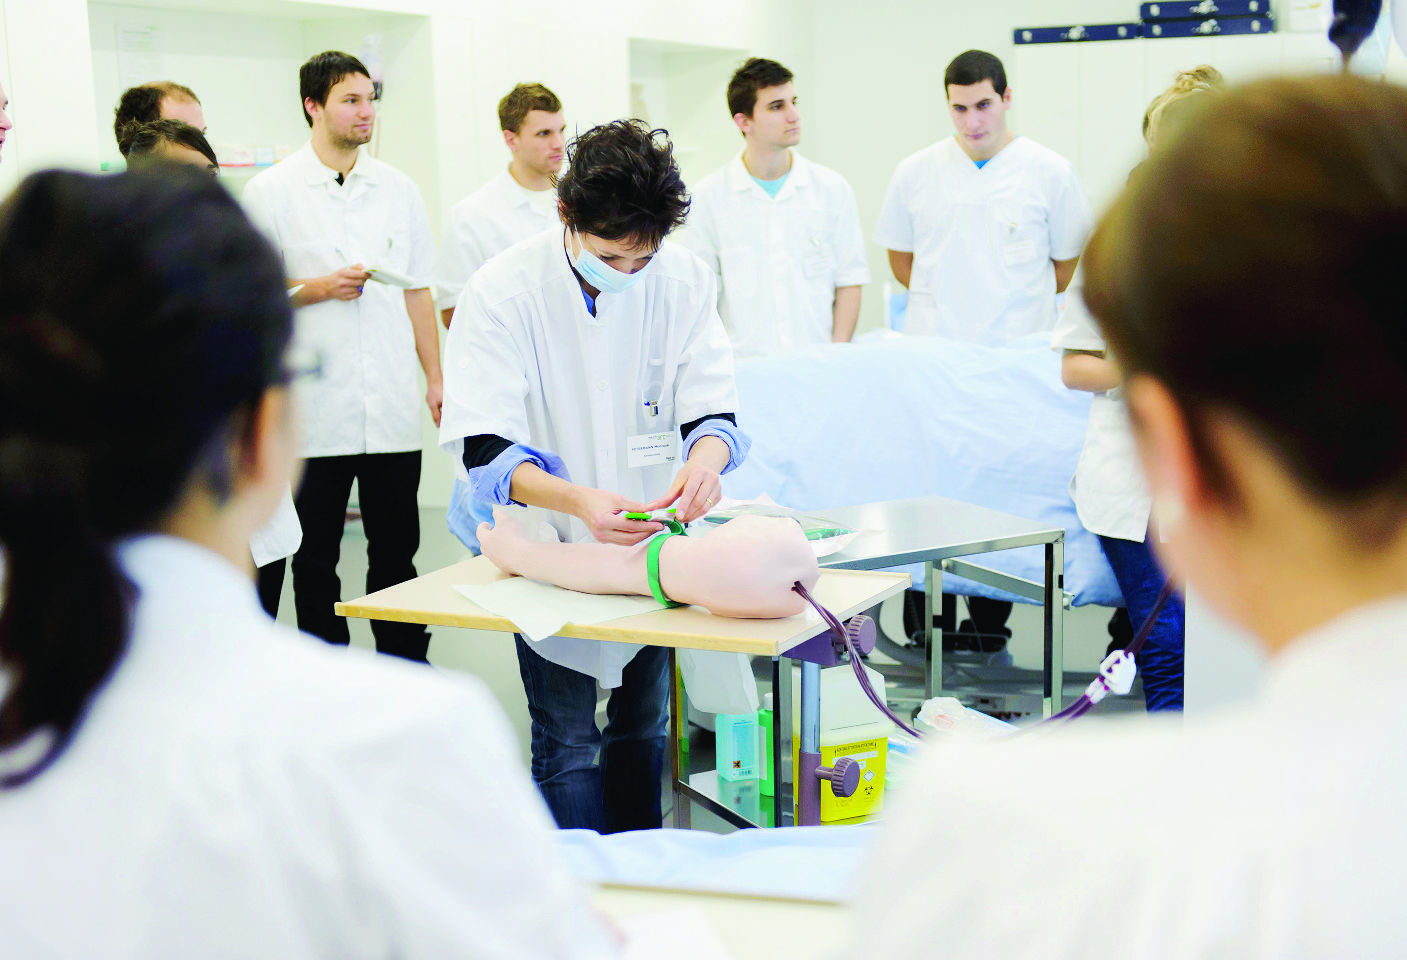 Les observateurs estiment que 45% des infirmiers-ères ne terminent pas leur carrière dans cette profession.